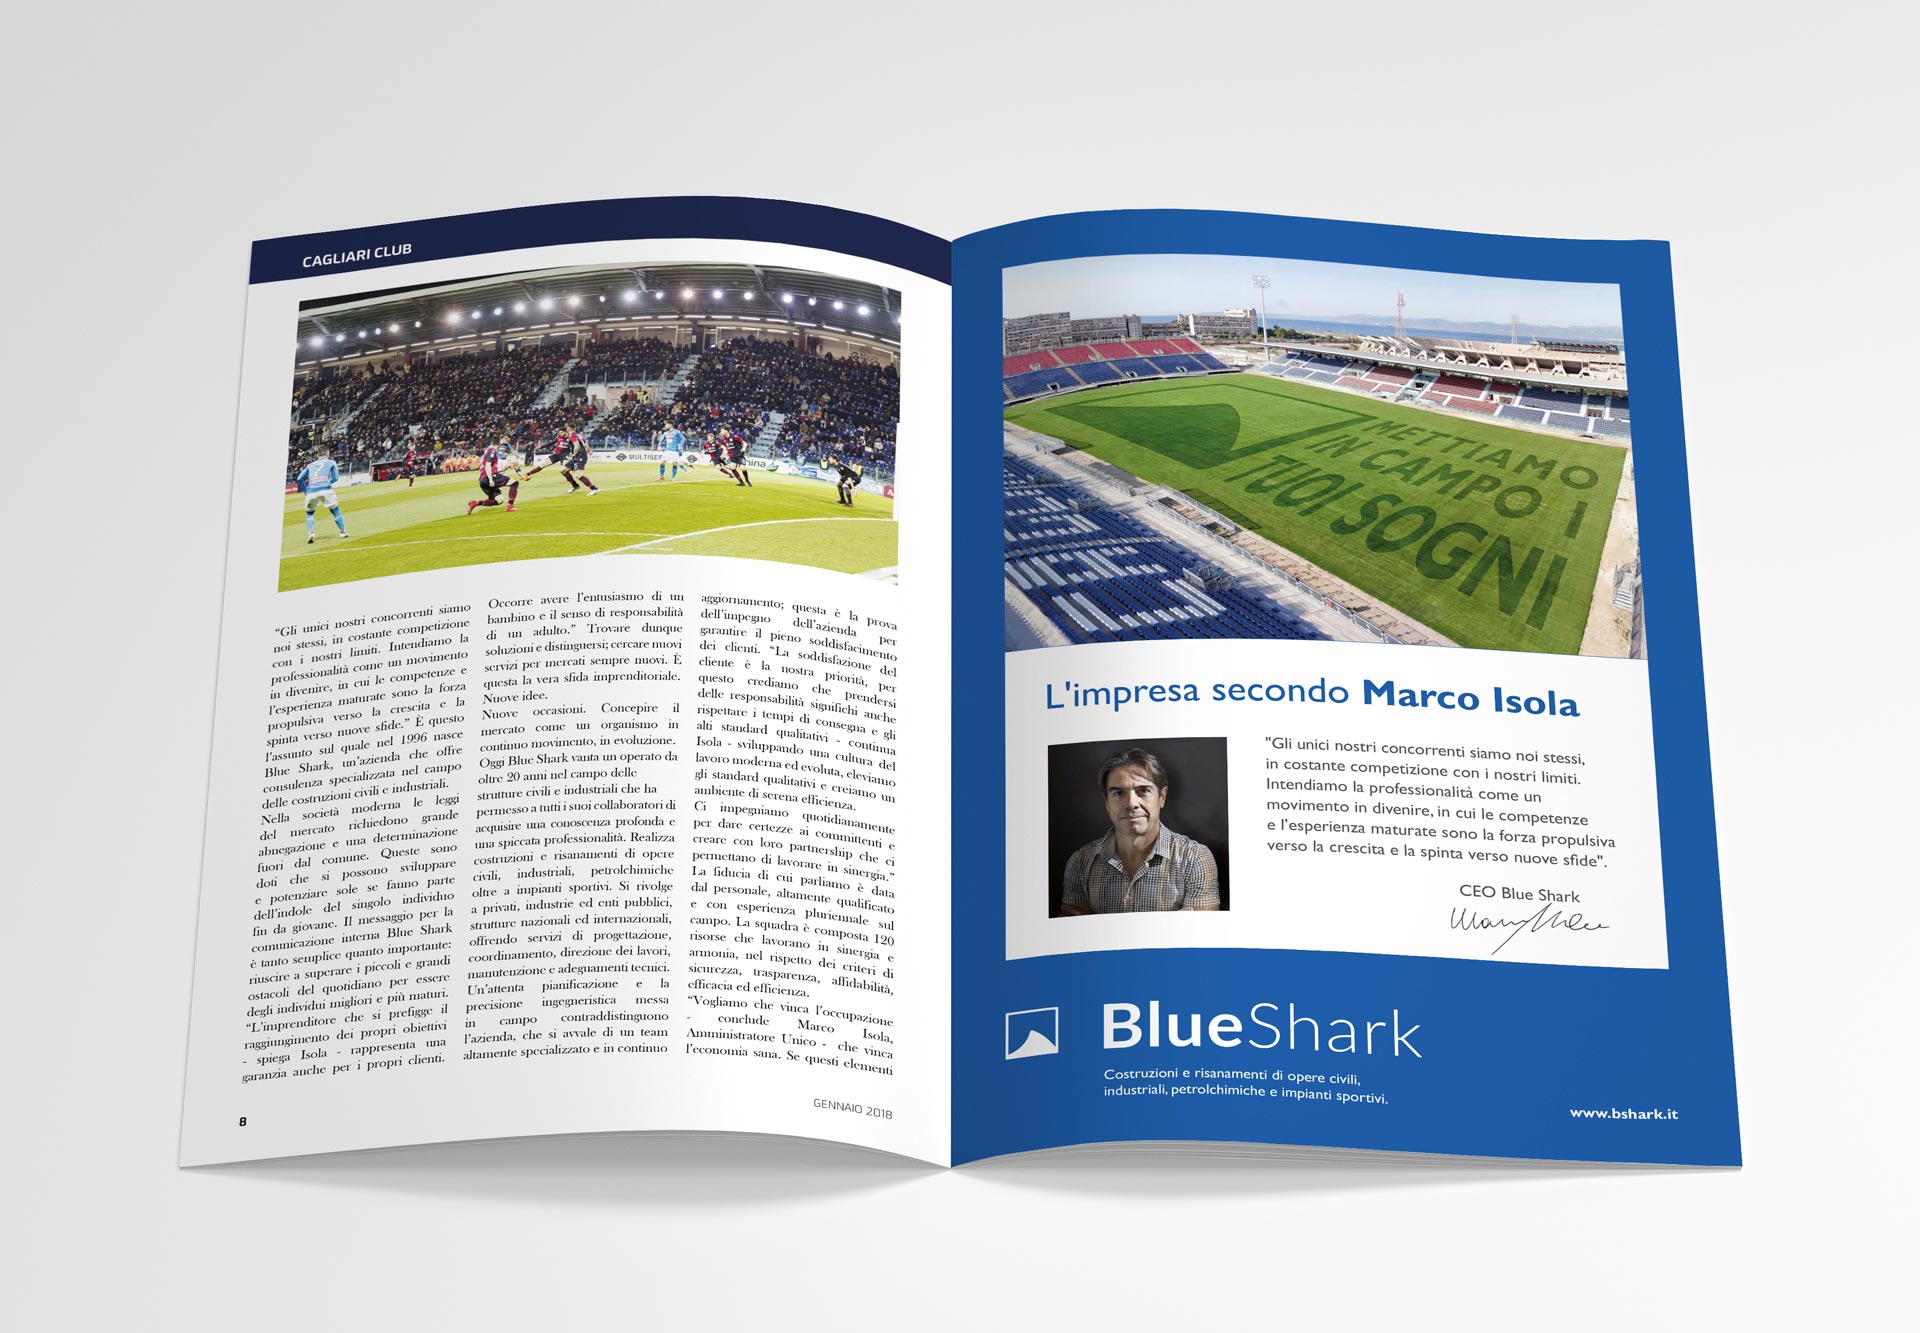 Pubblicità Blue Shark sulla rivista Cuore Rossoblù del Cagliari Calcio. CARE Web & Design